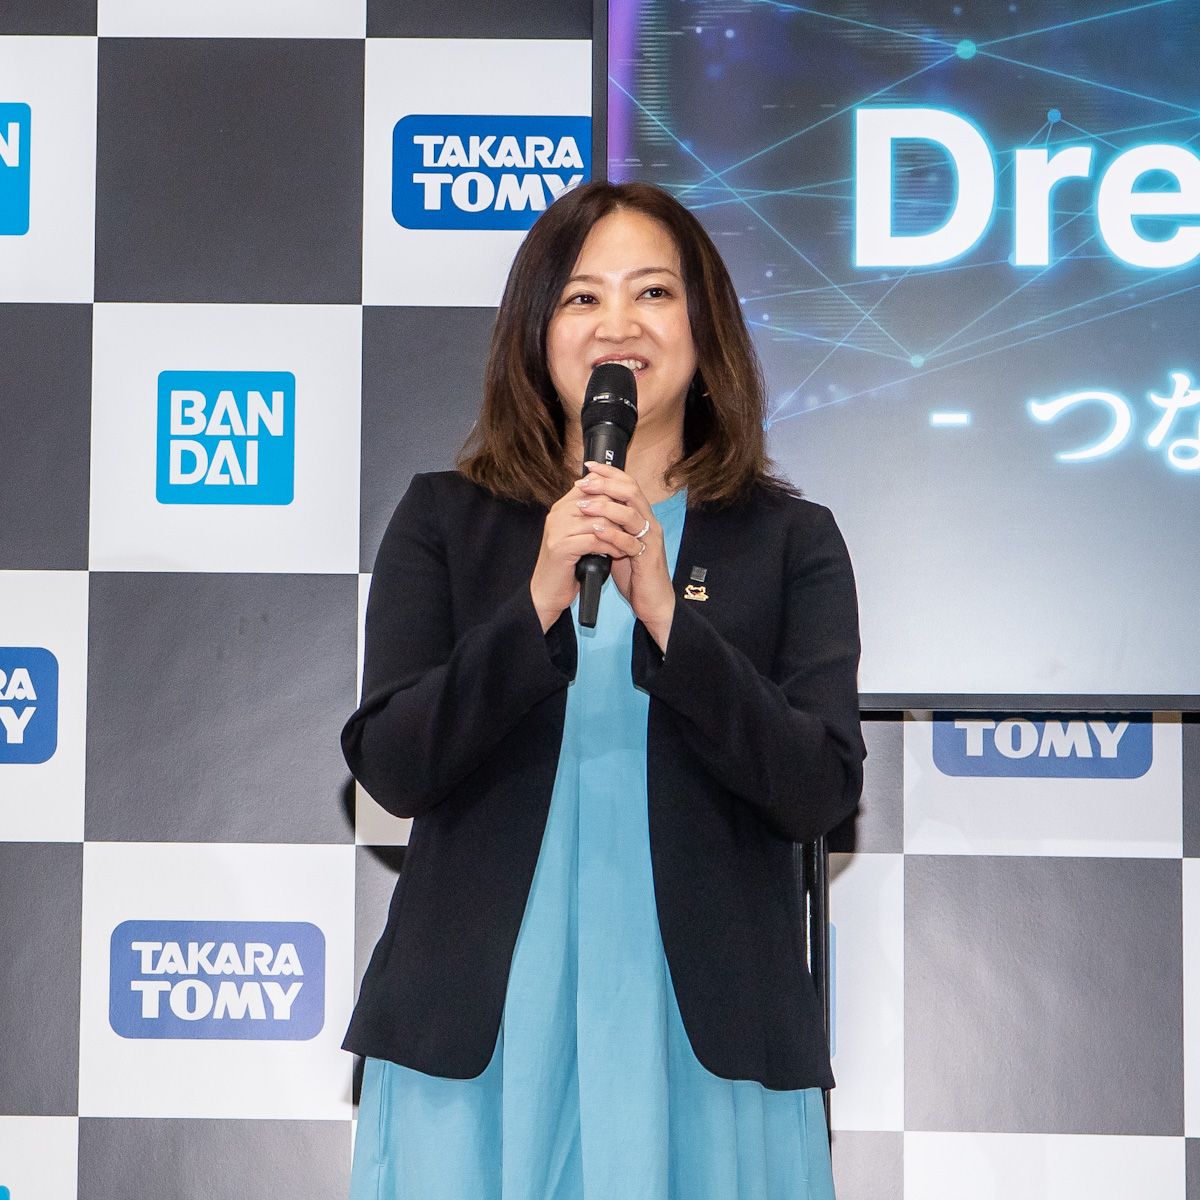 BANDAI SPIRITS タカラトミー コラボプロジェクト「Dream Together」-つながる想い、ともに創る夢- 記者発表会